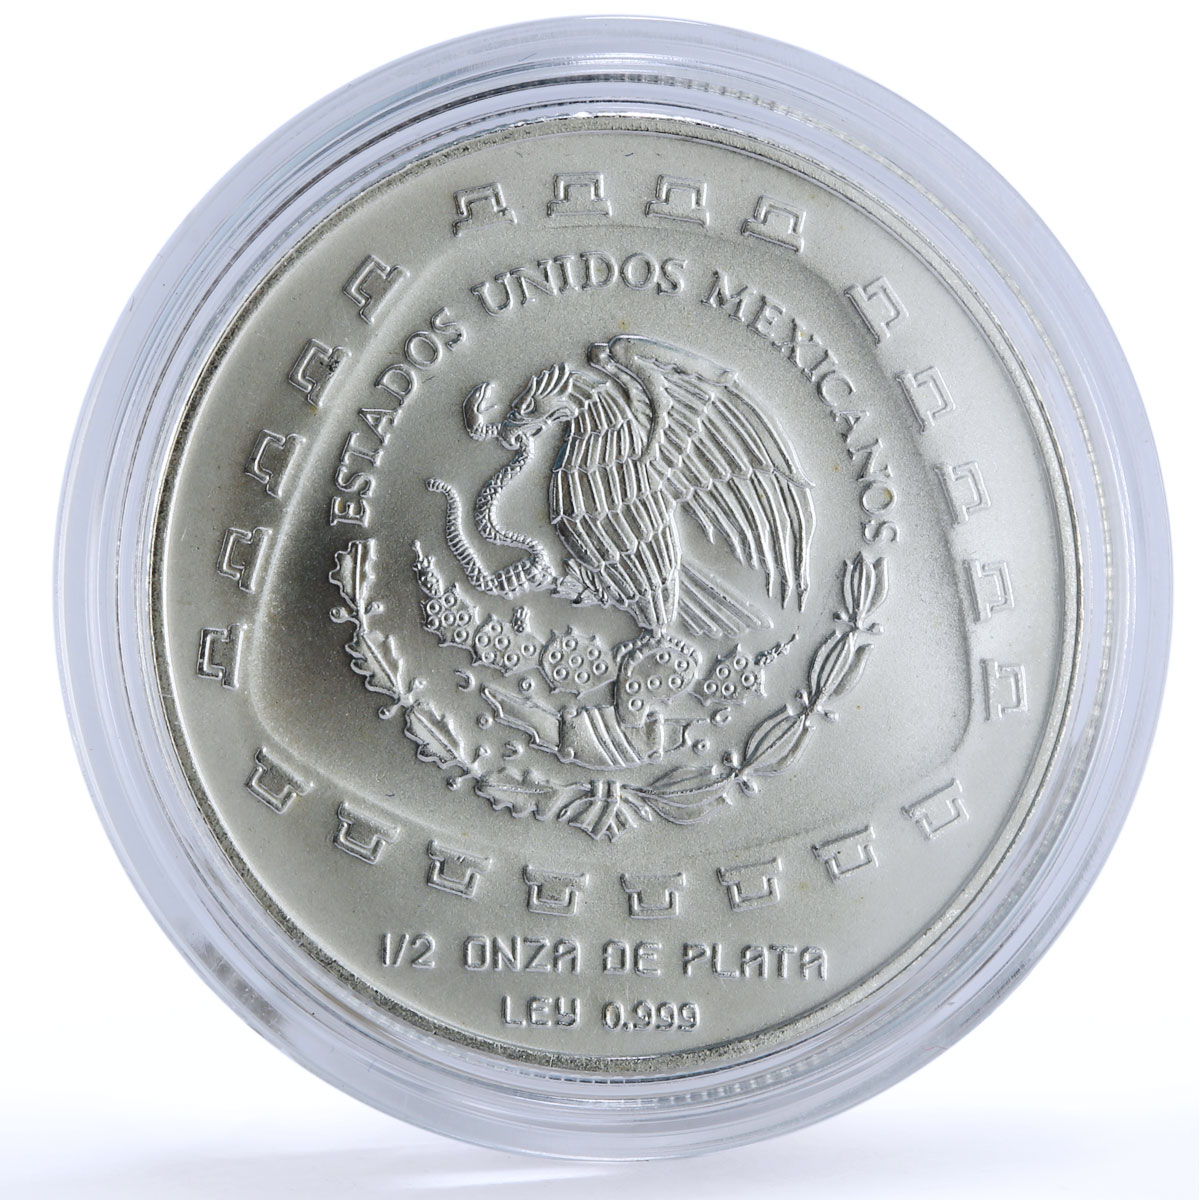 Mexico 2 pesos Precolombina Jaguar Stone Statue Sculpture silver coin 1998